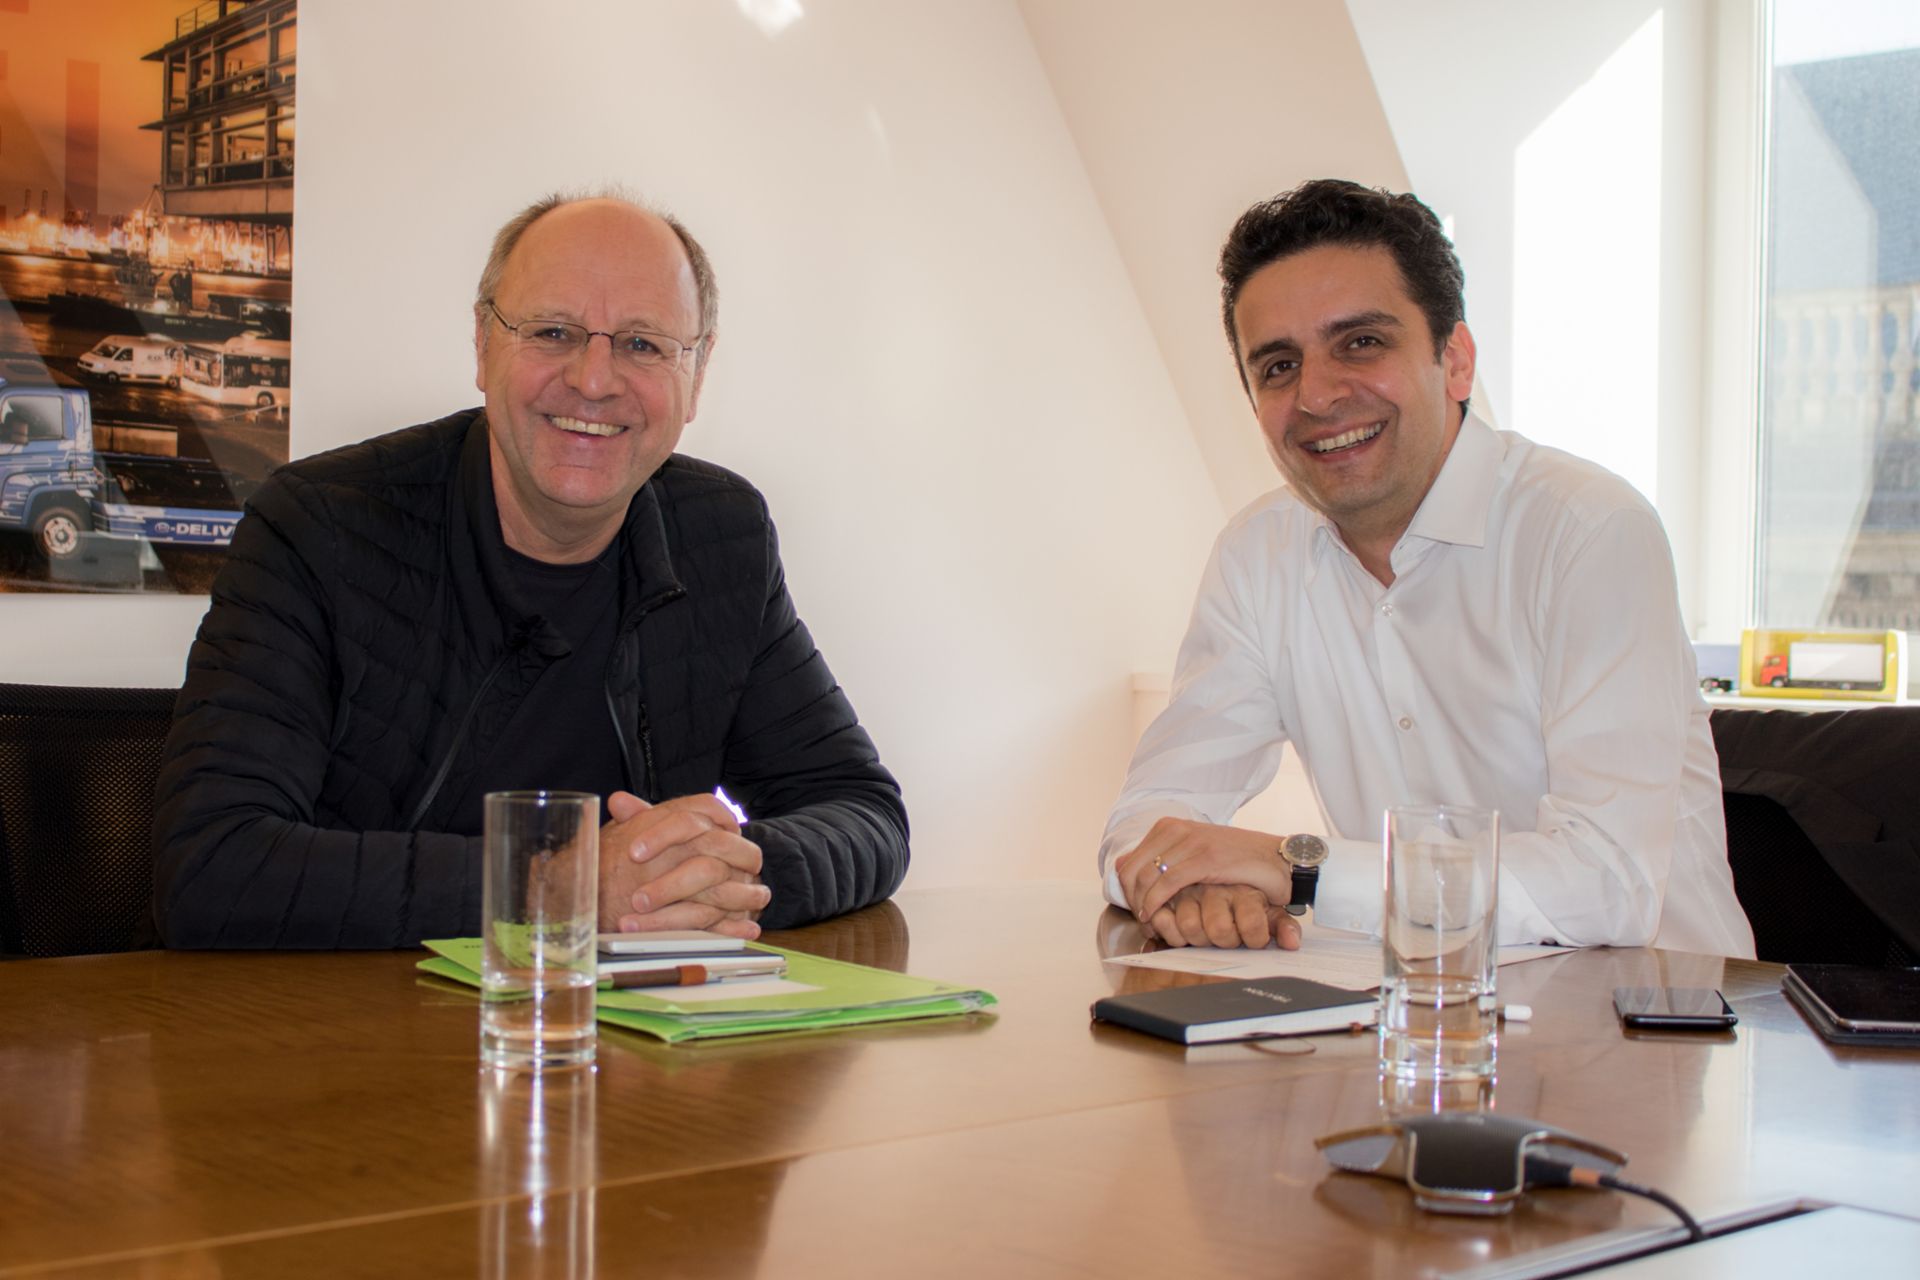 Experts meet in Berlin – Weert Canzler and Atif Askar (right)